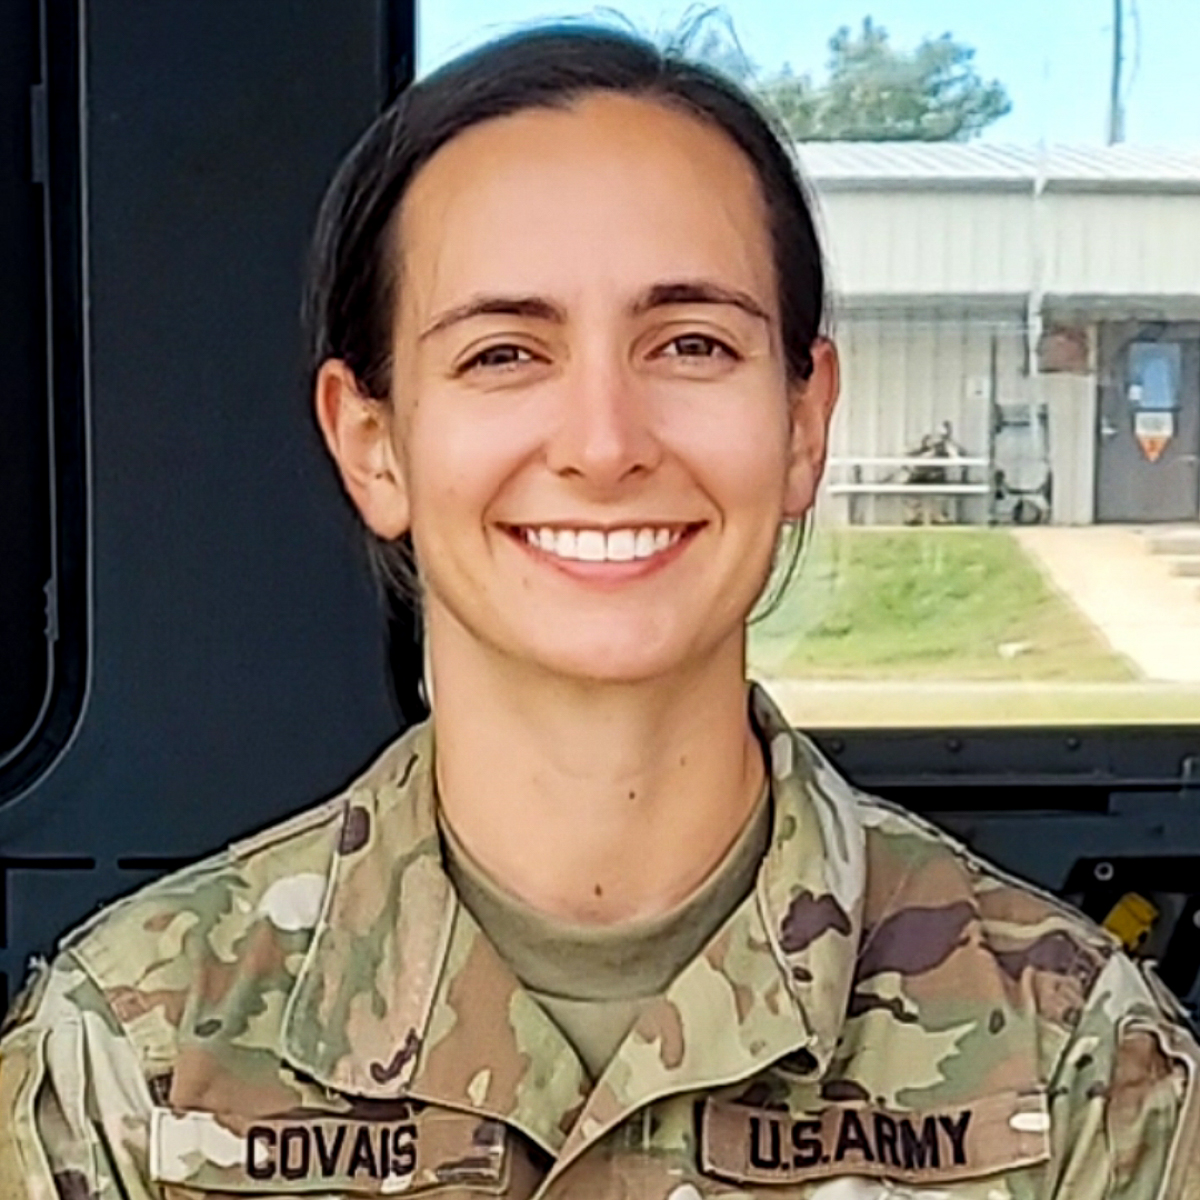 Capt. Emily Covais